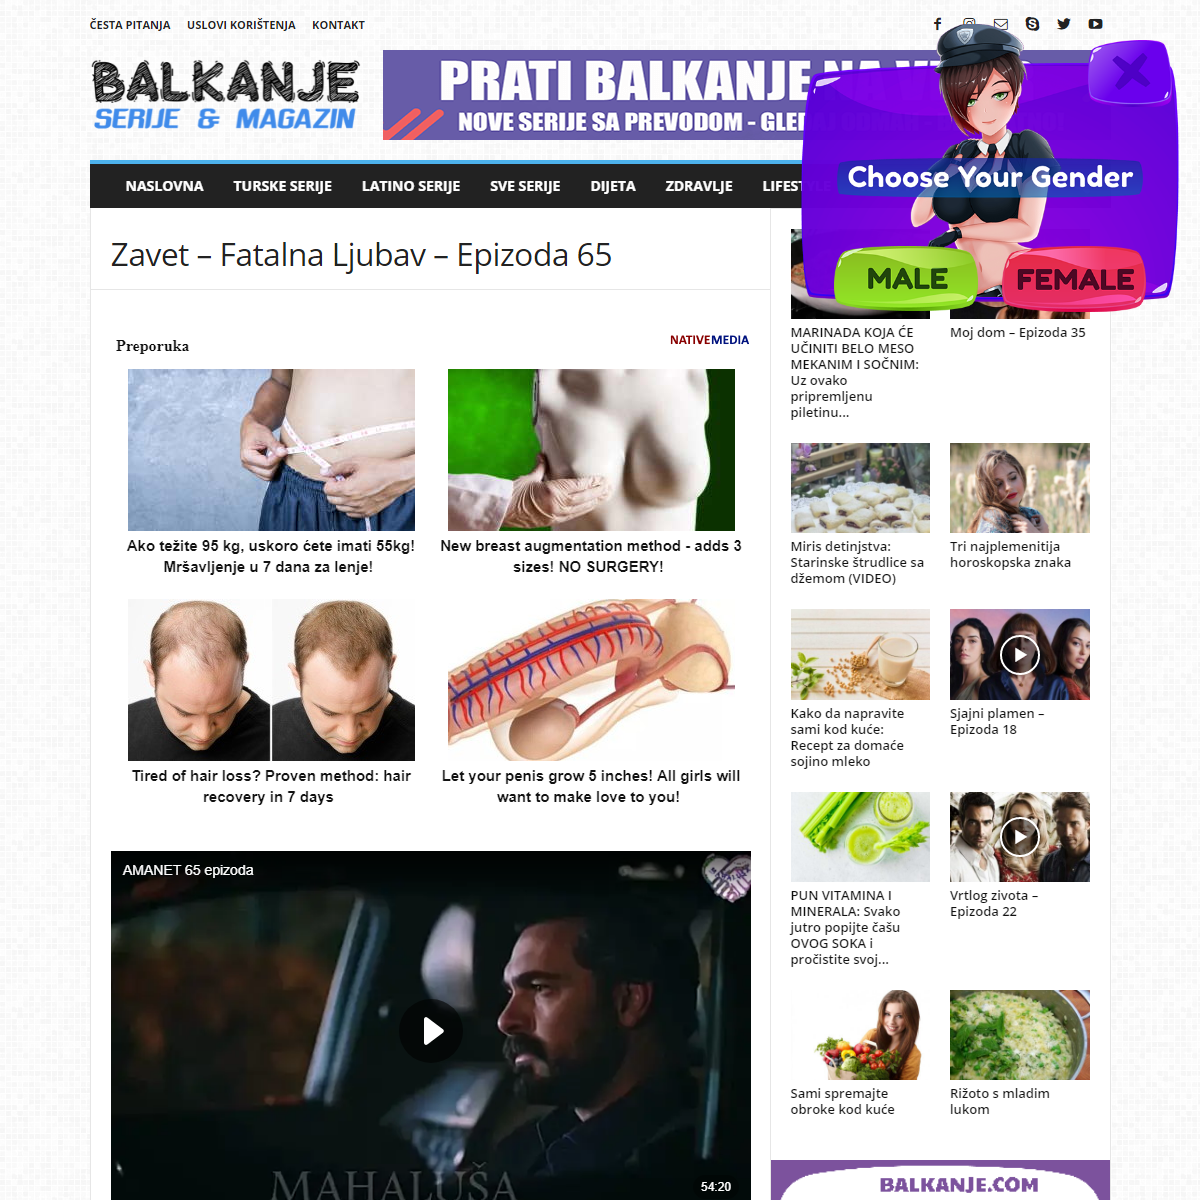 A complete backup of https://balkanje.com/zavet-fatalna-ljubav-epizoda-65/